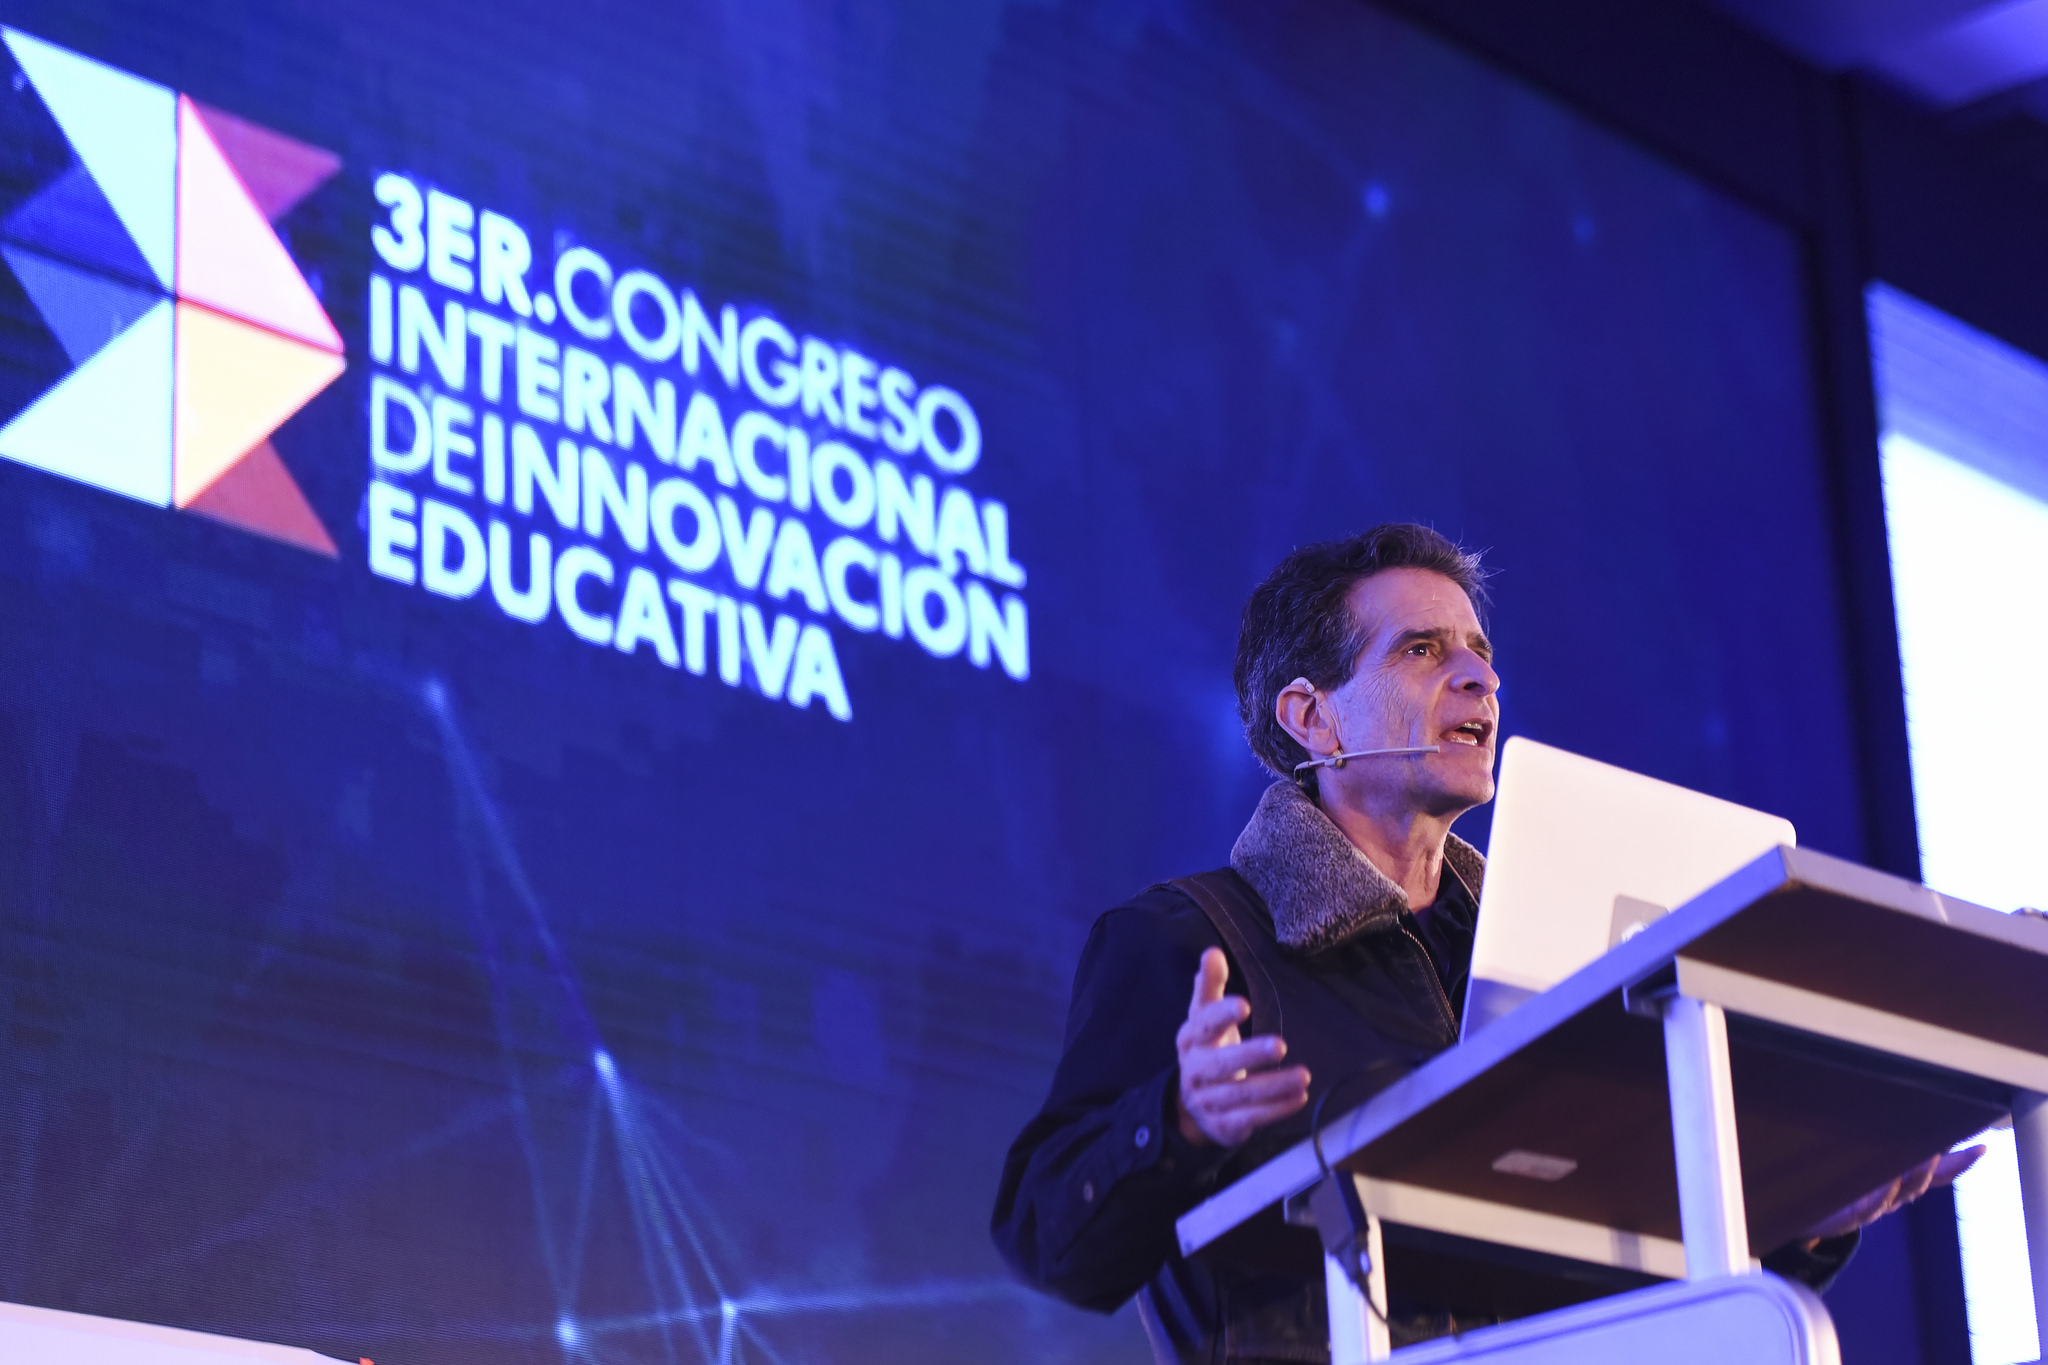 Entrevista a Dean Kamen | Inventor, emprendedor, promotor de ciencia y tecnología y fundador de FIRST